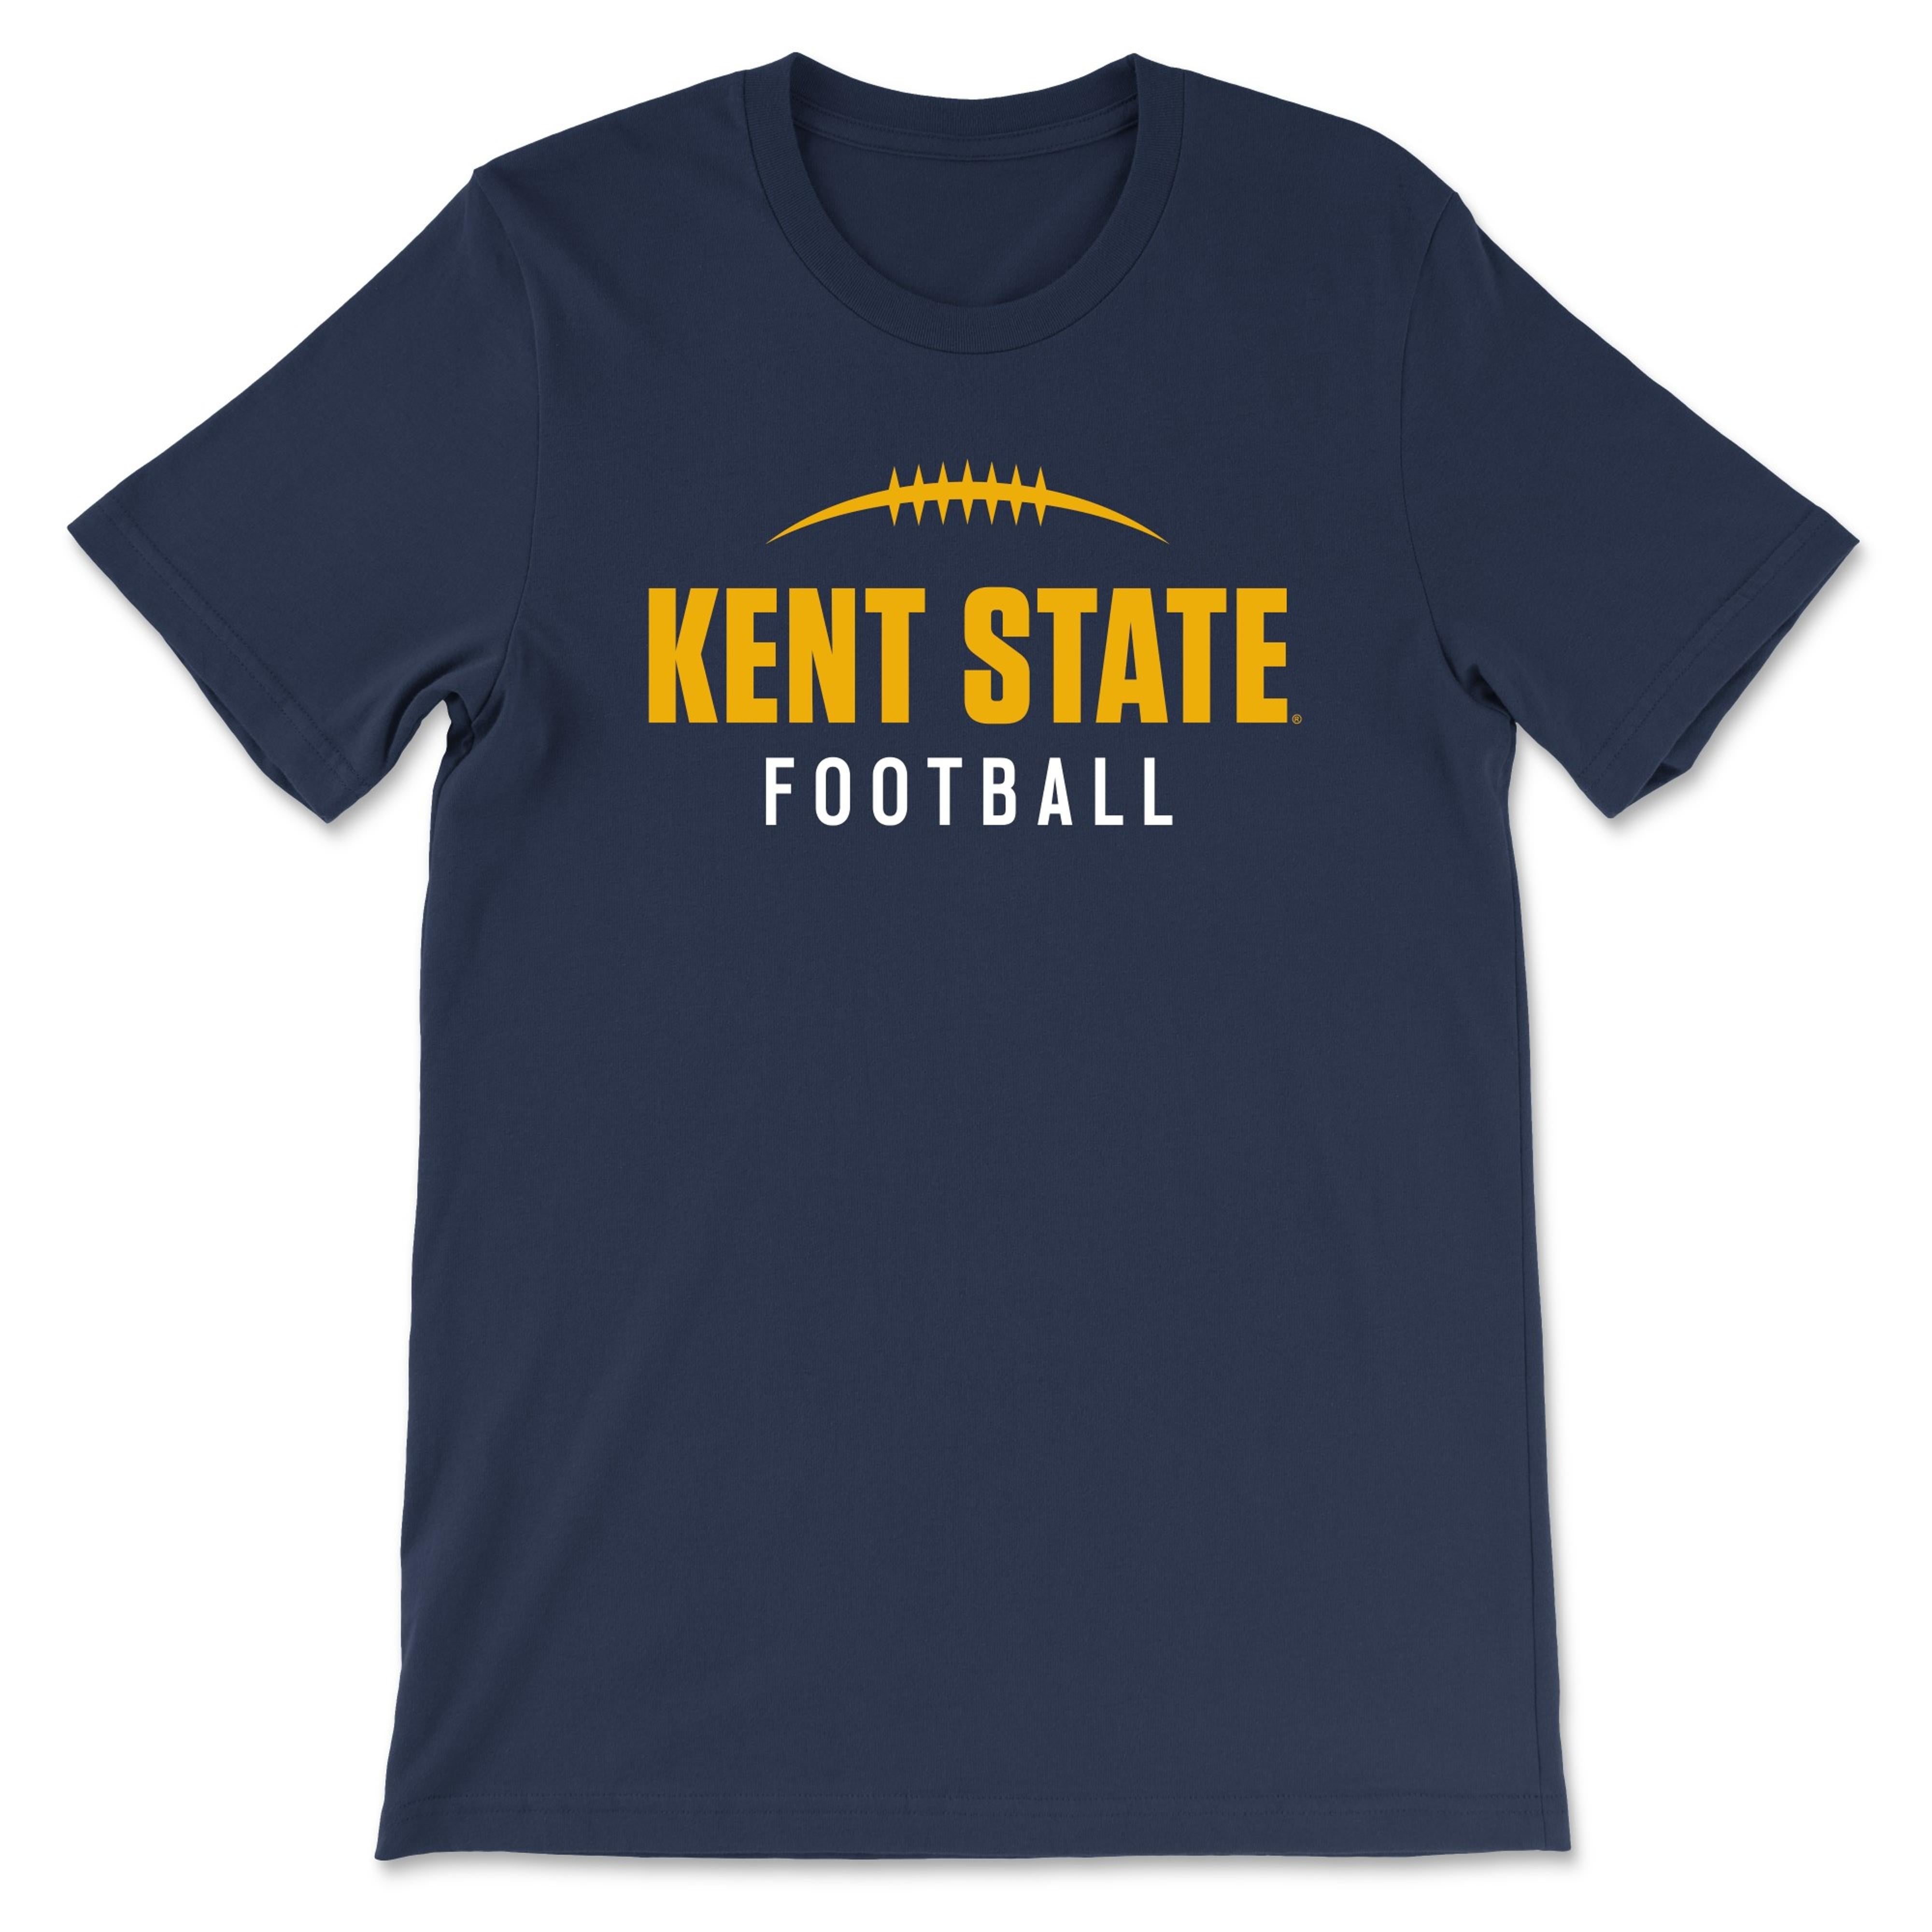 Kent State Navy Football T-Shirt